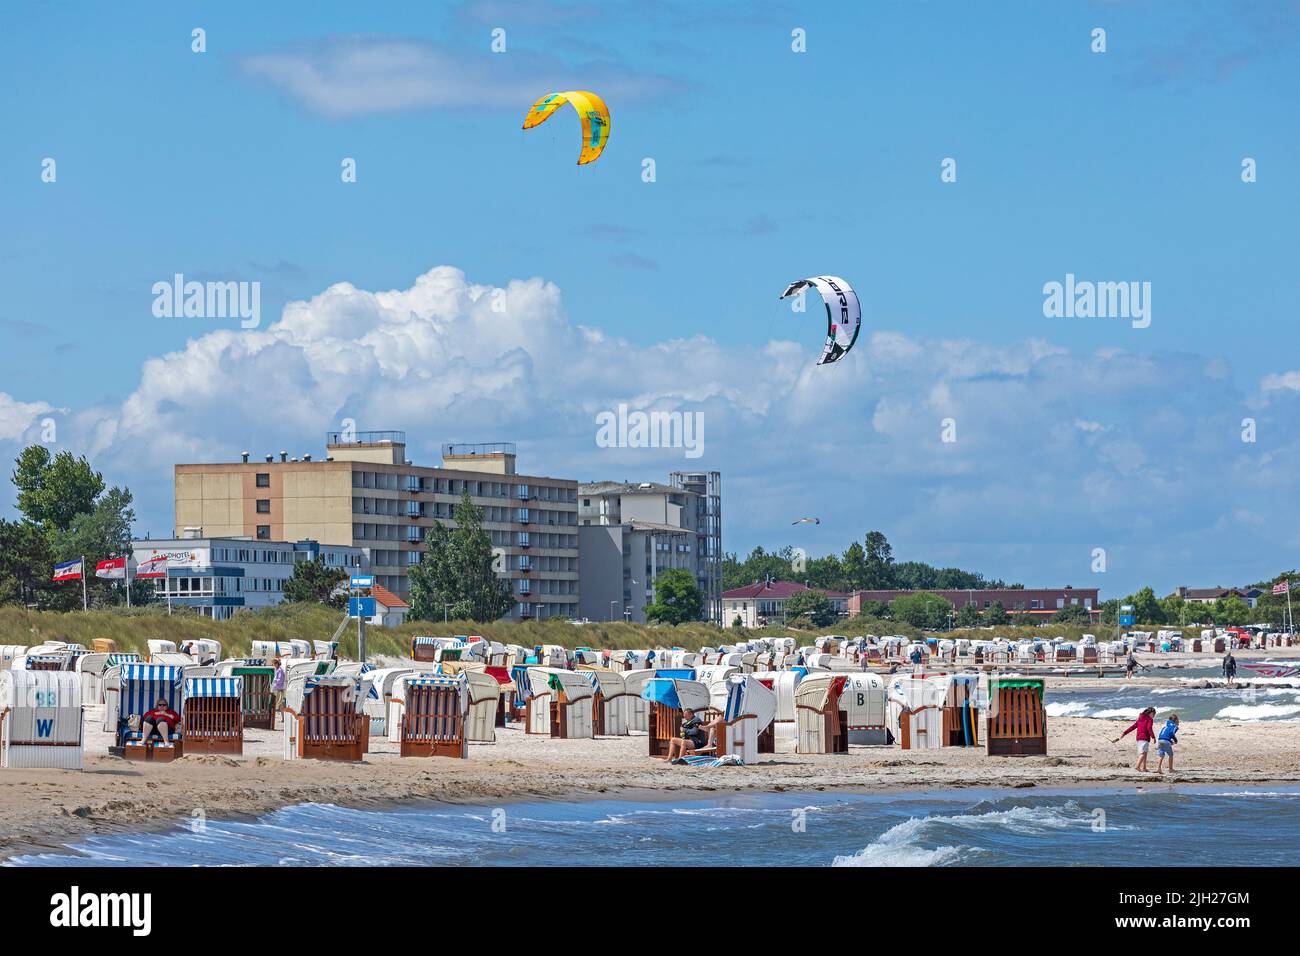 Beach Hotel, kitesurfers, beach, Steinwarder, Heiligenhafen, Schleswig-Holstein, Germany Stock Photo